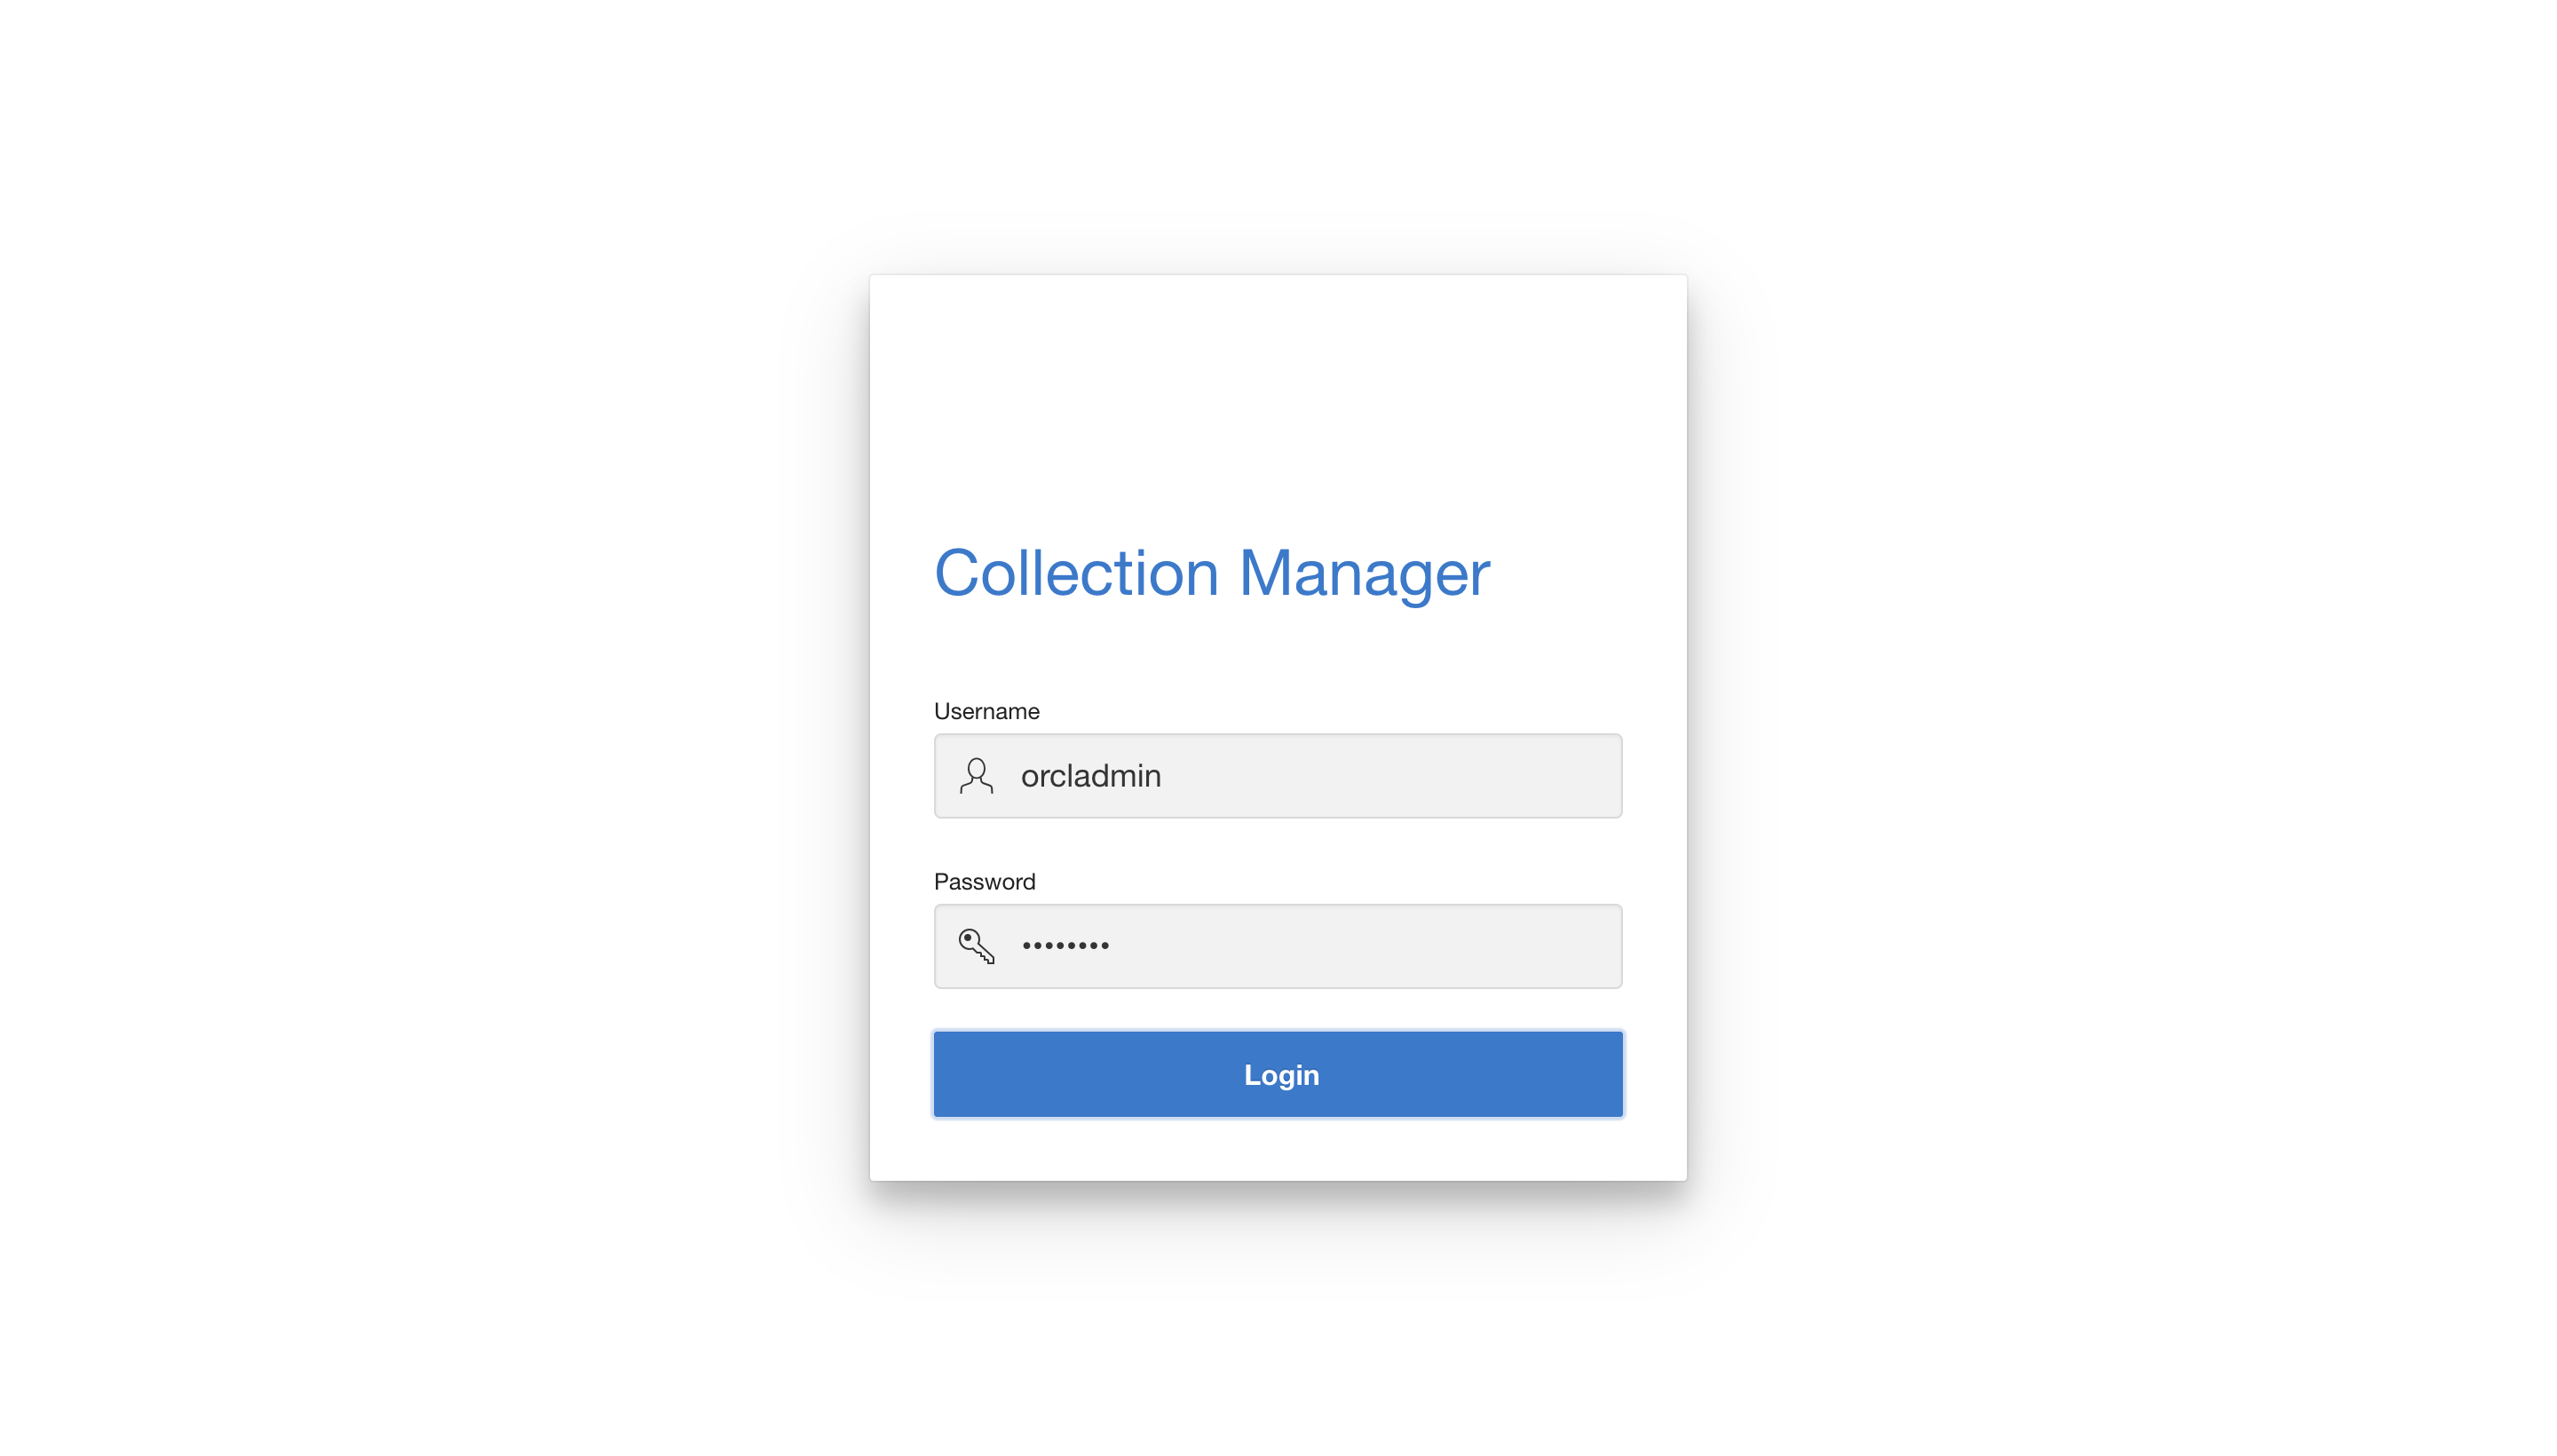 この図は、Collection Managerへのログインを示しています。